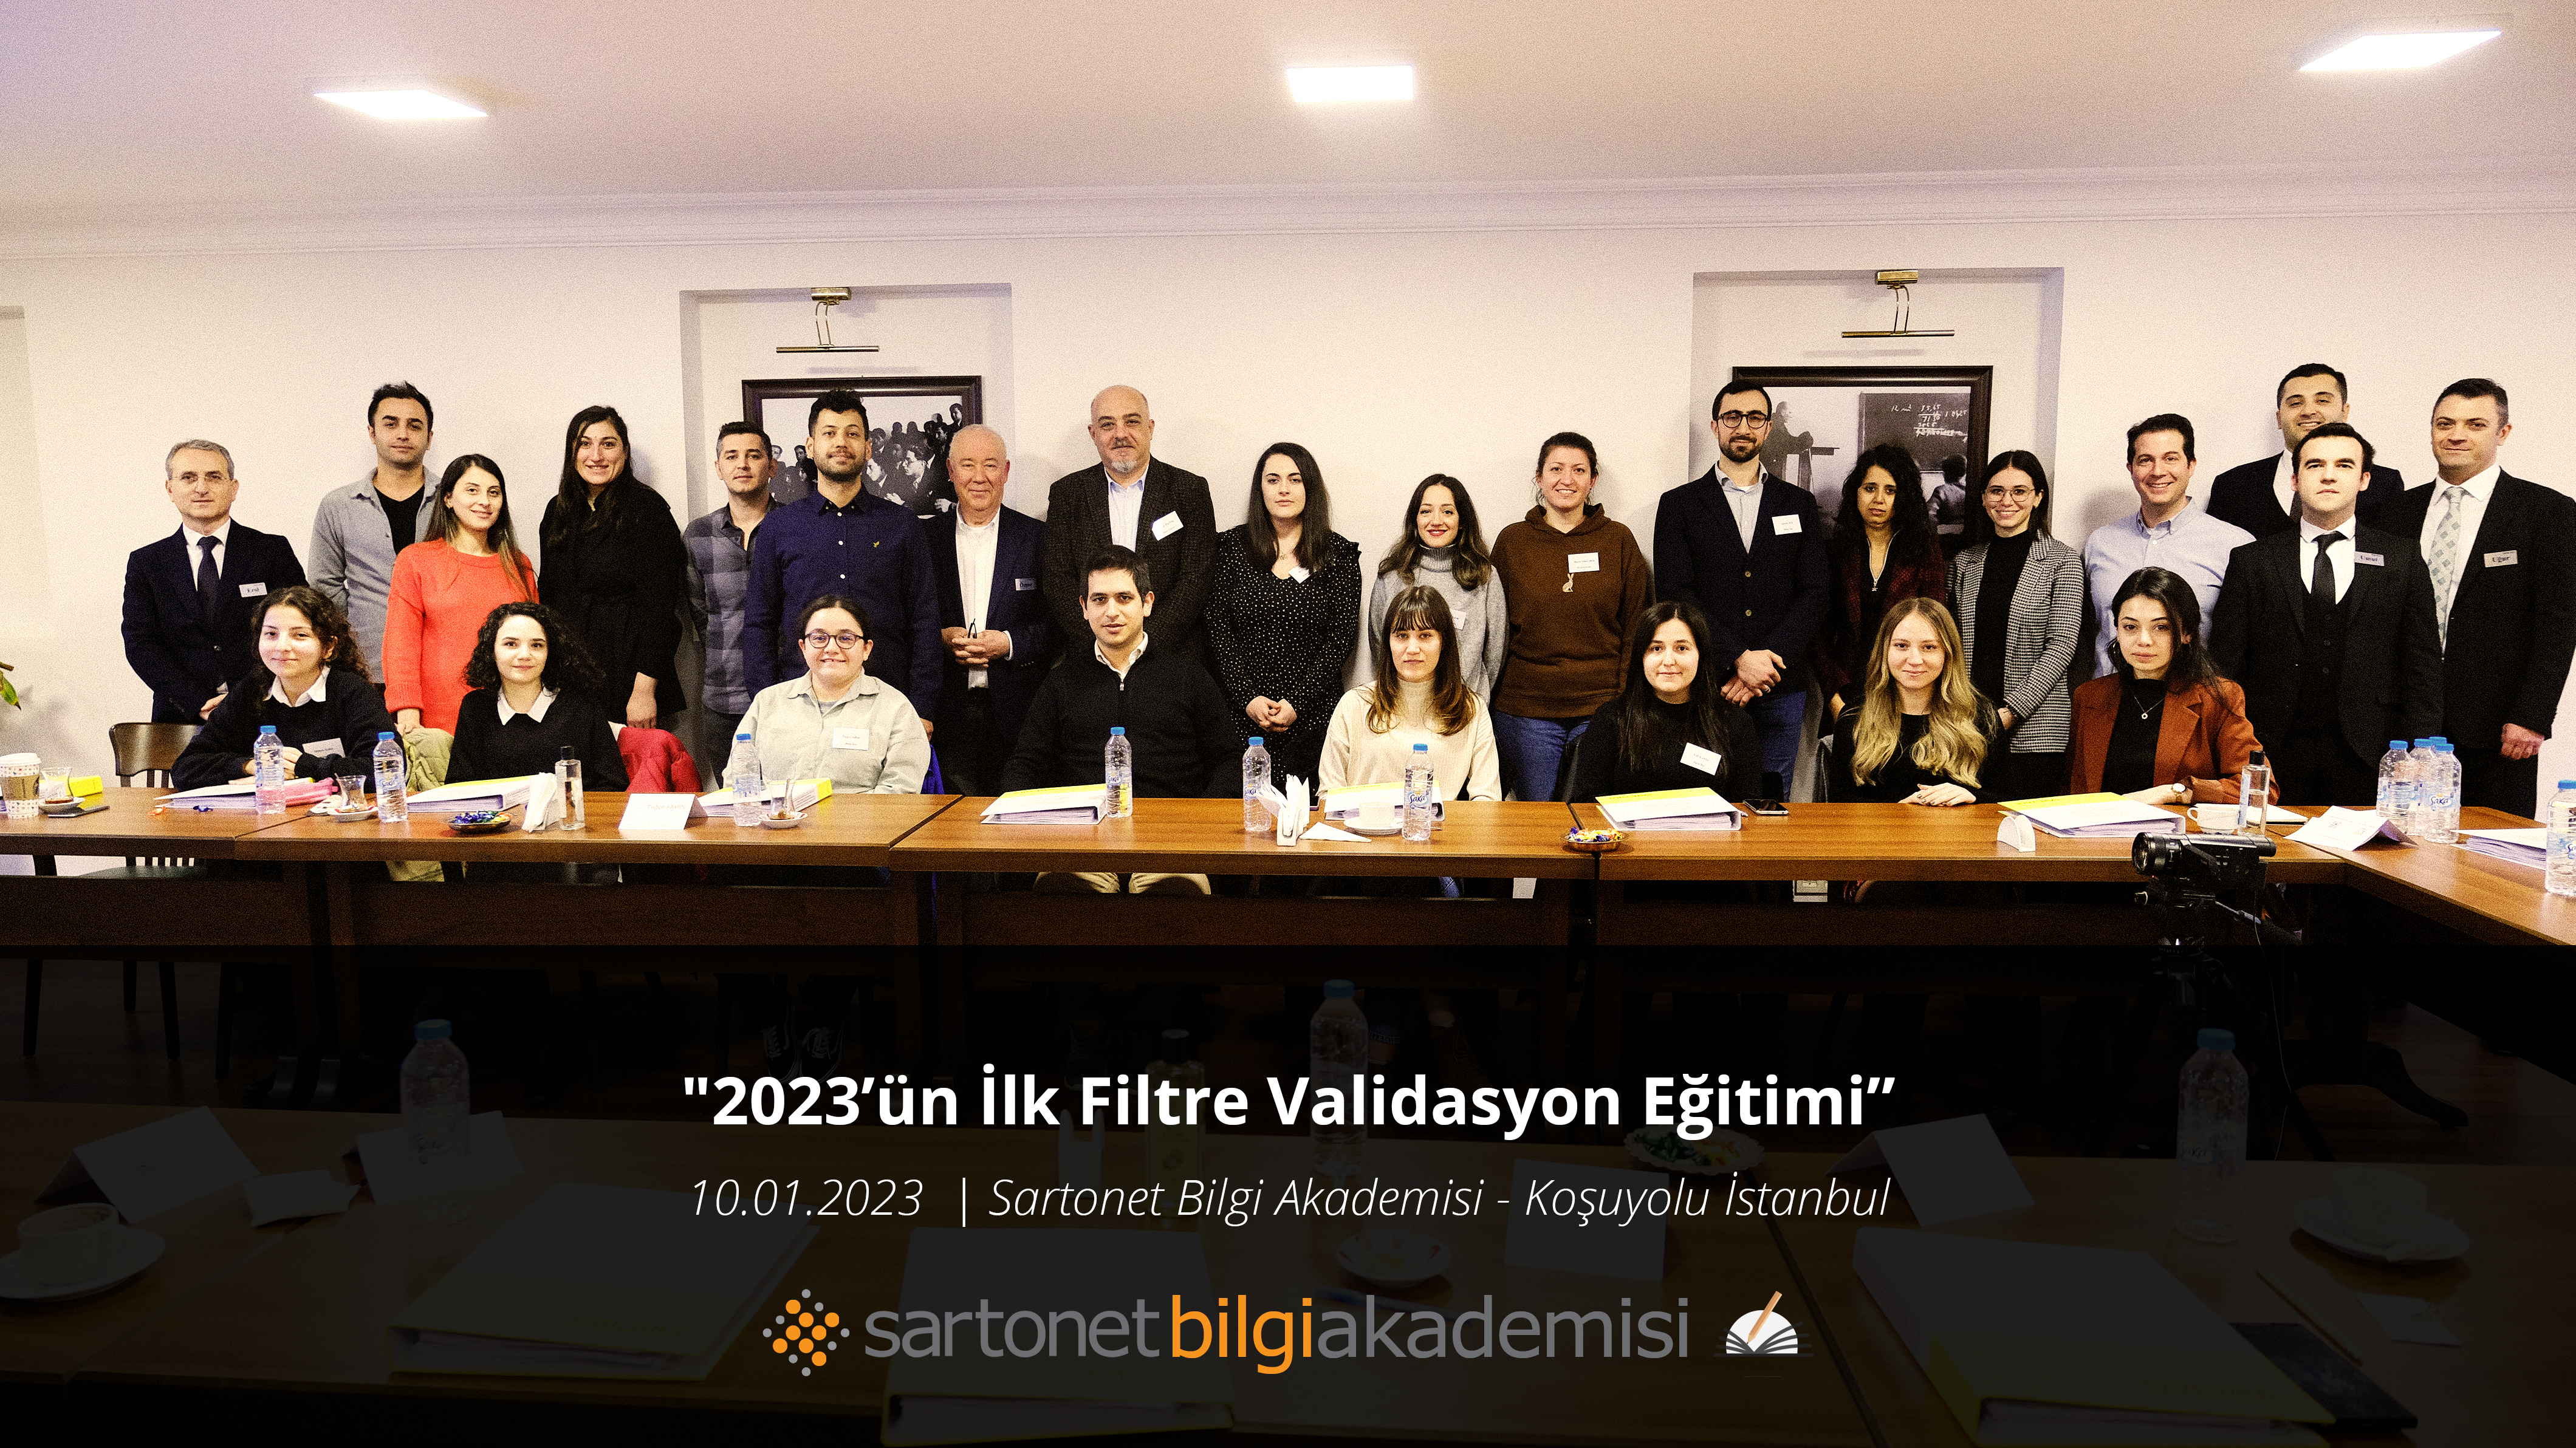 2023'ün ilk filtre validasyonu eğitimi 10 Ocak'ta Sartonet Bilgi Akademisi'nde gerçekleşti.